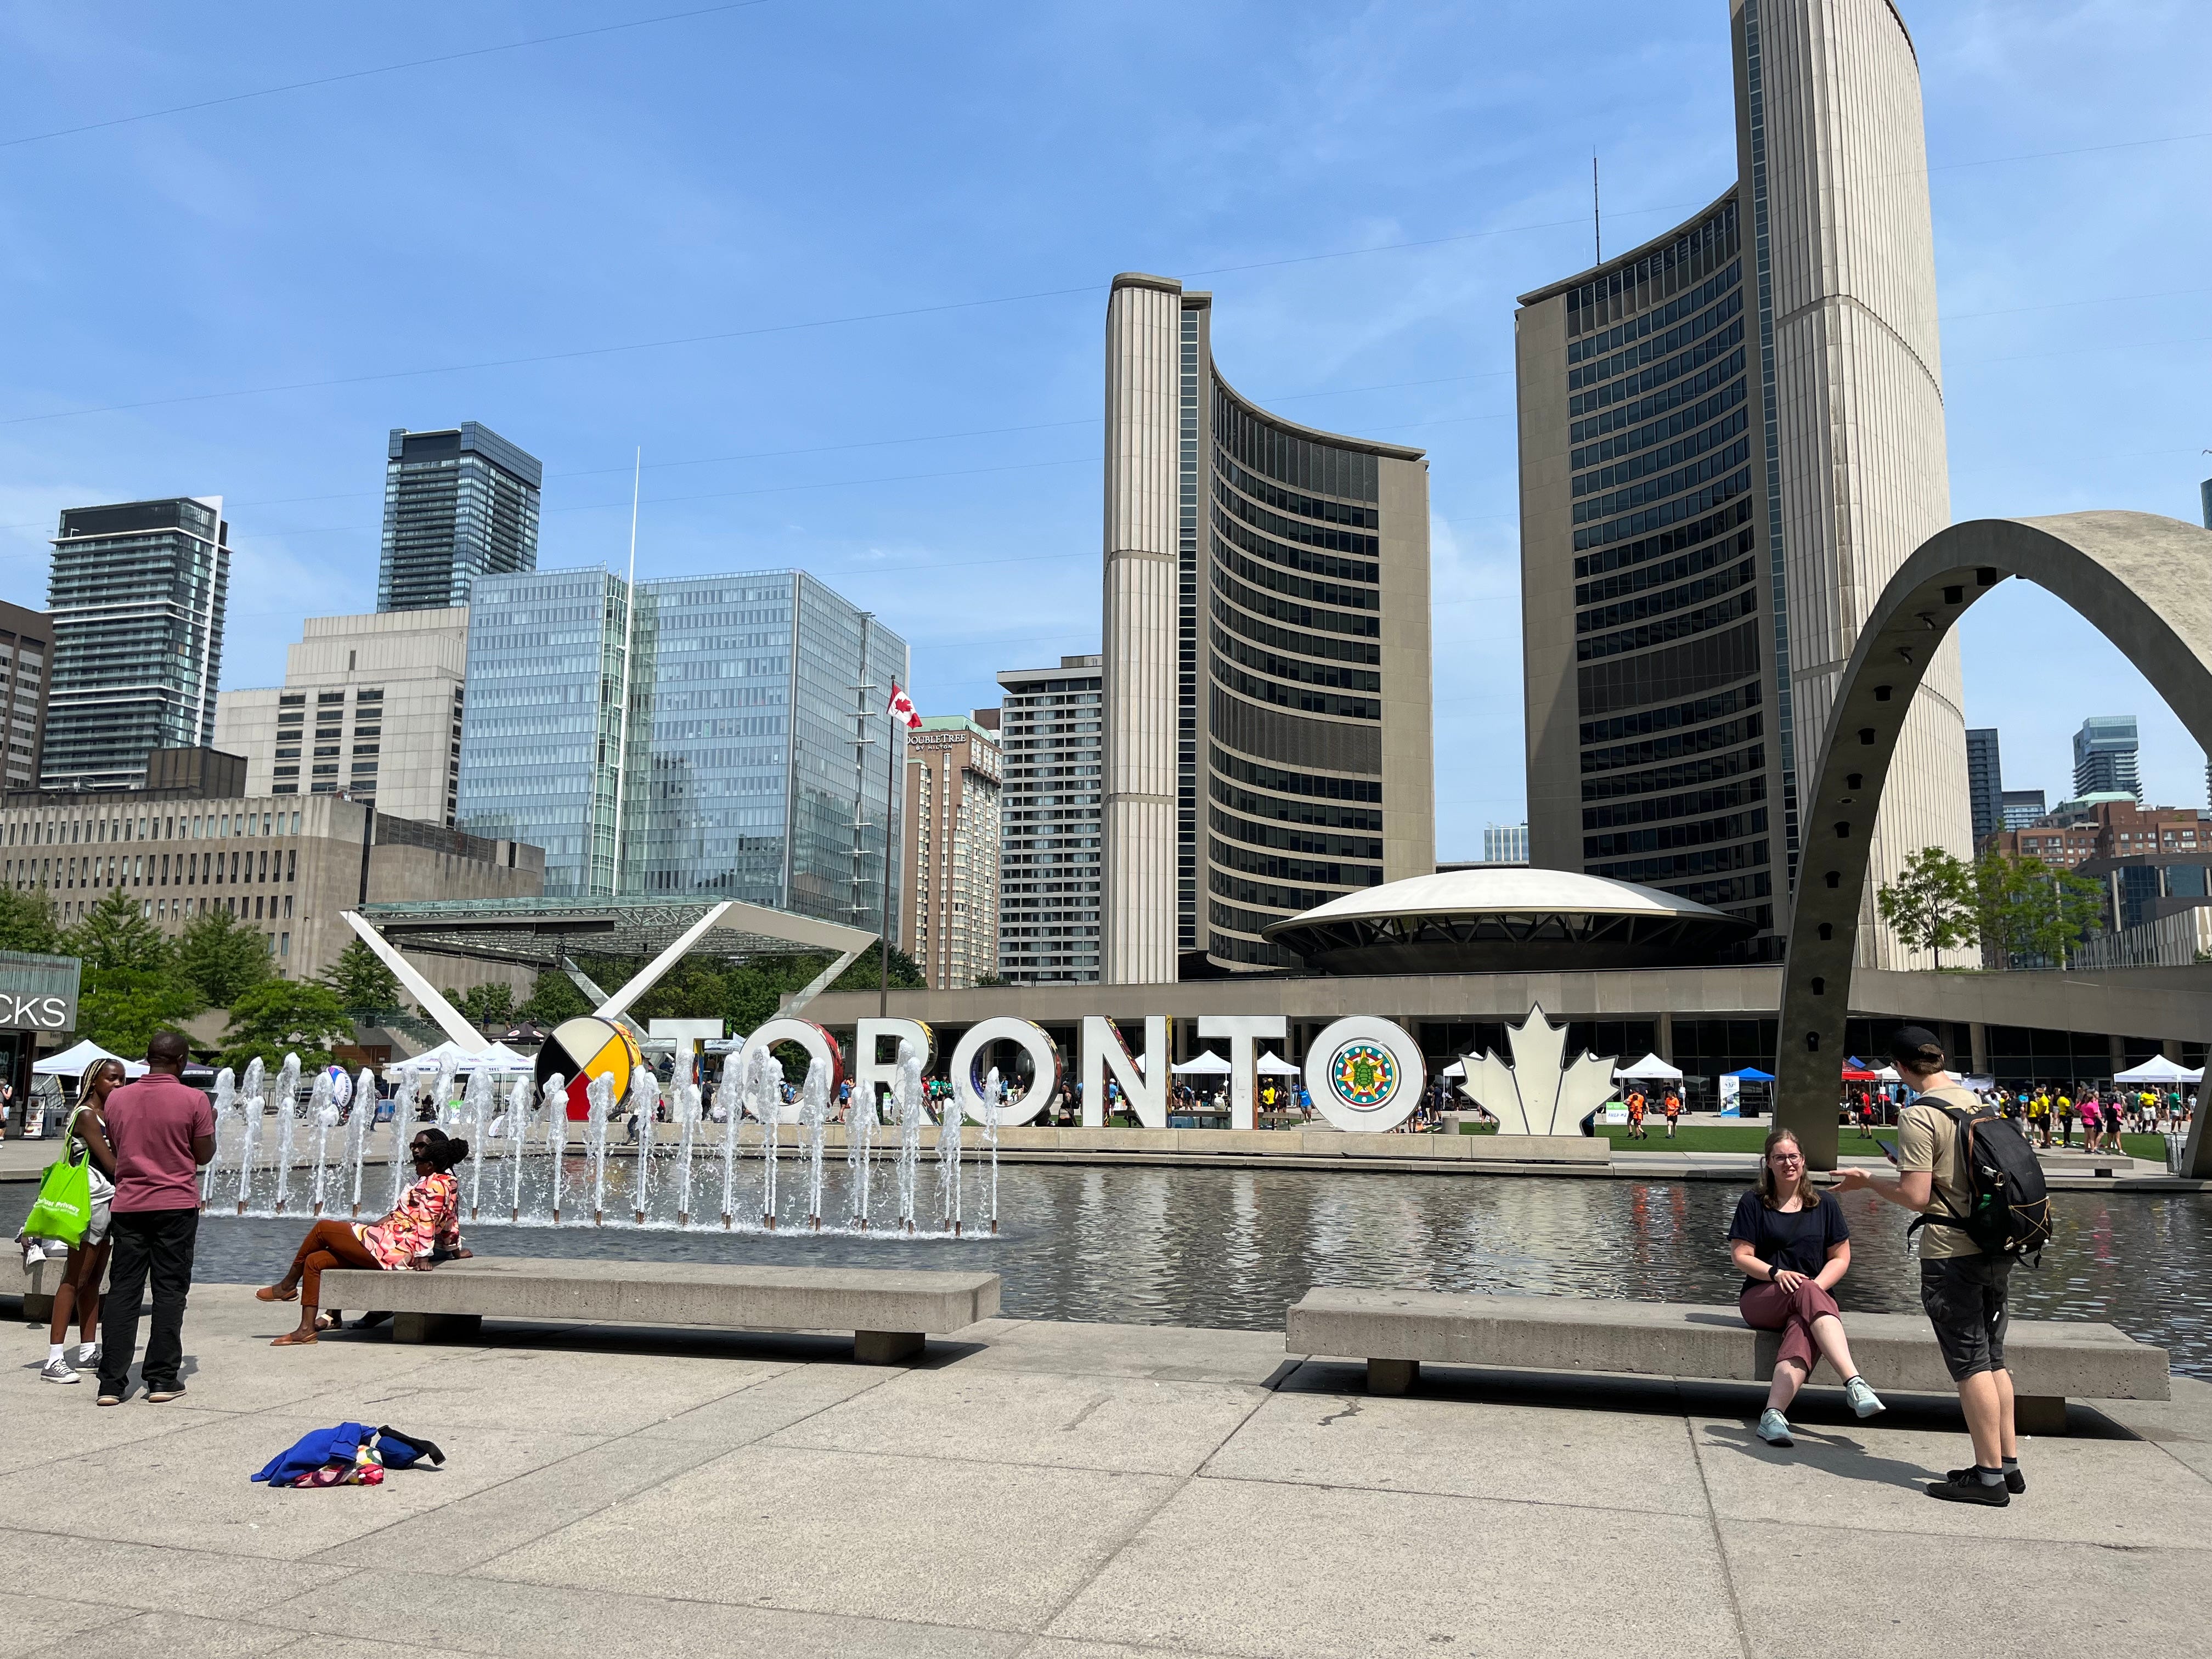 Toronto-Schild in der Stadt